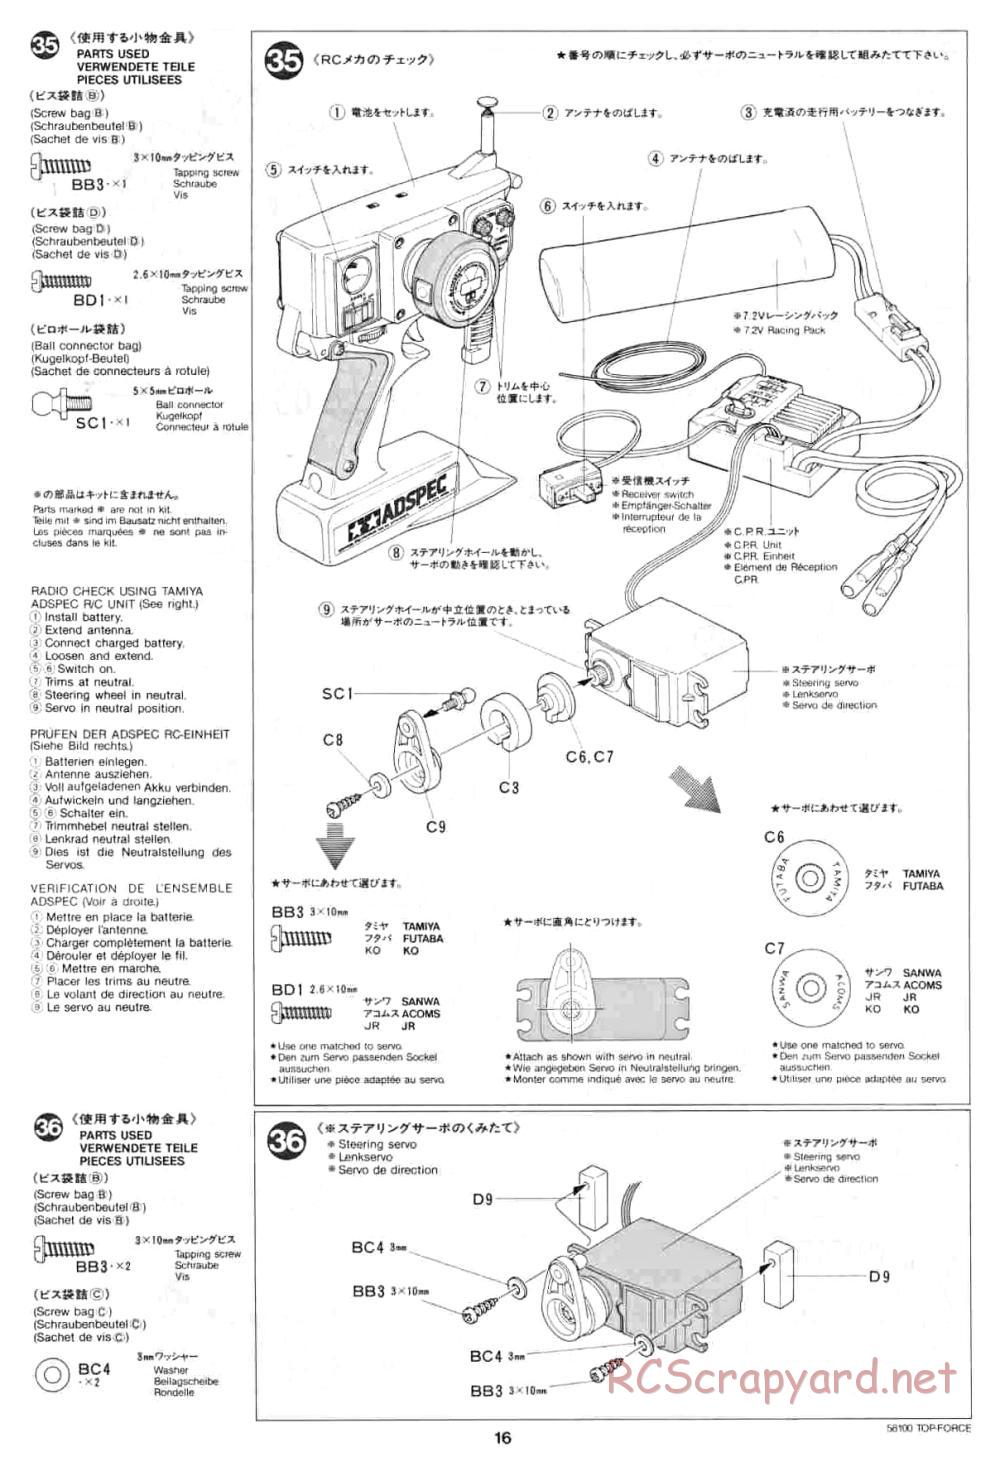 Tamiya - Top Force - 58100 - Manual - Page 16